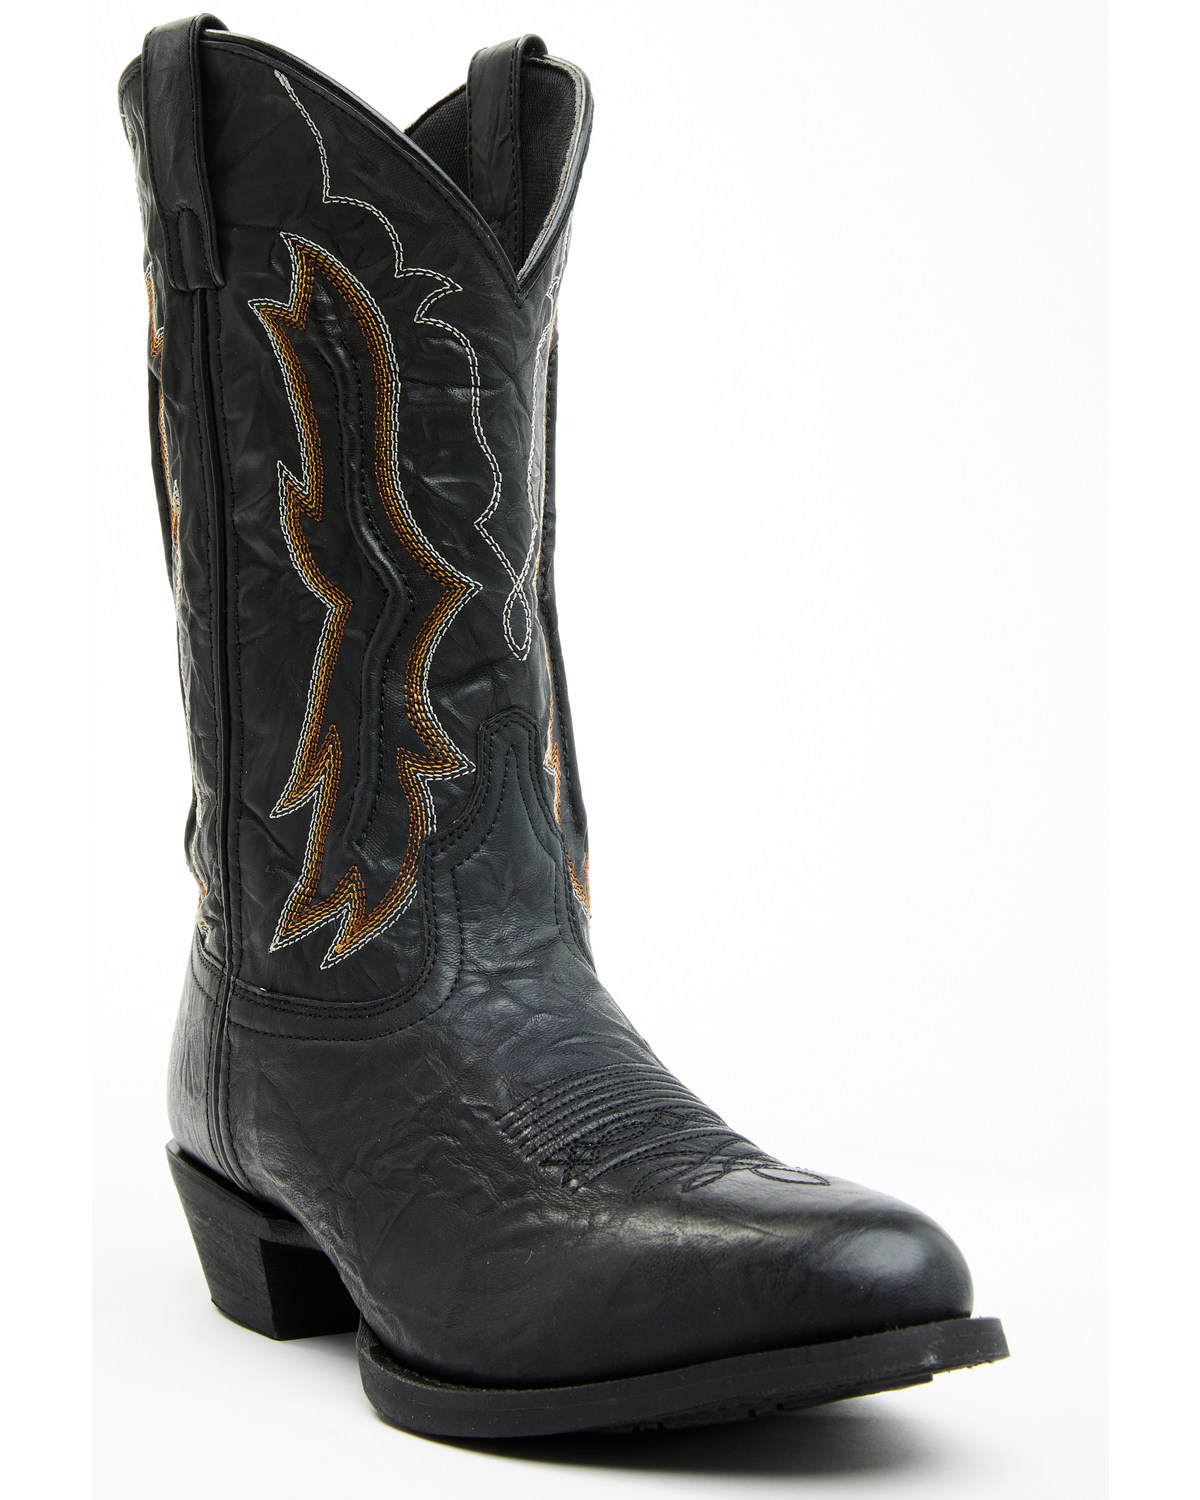 Laredo Men's Fancy Stitch Western Boots